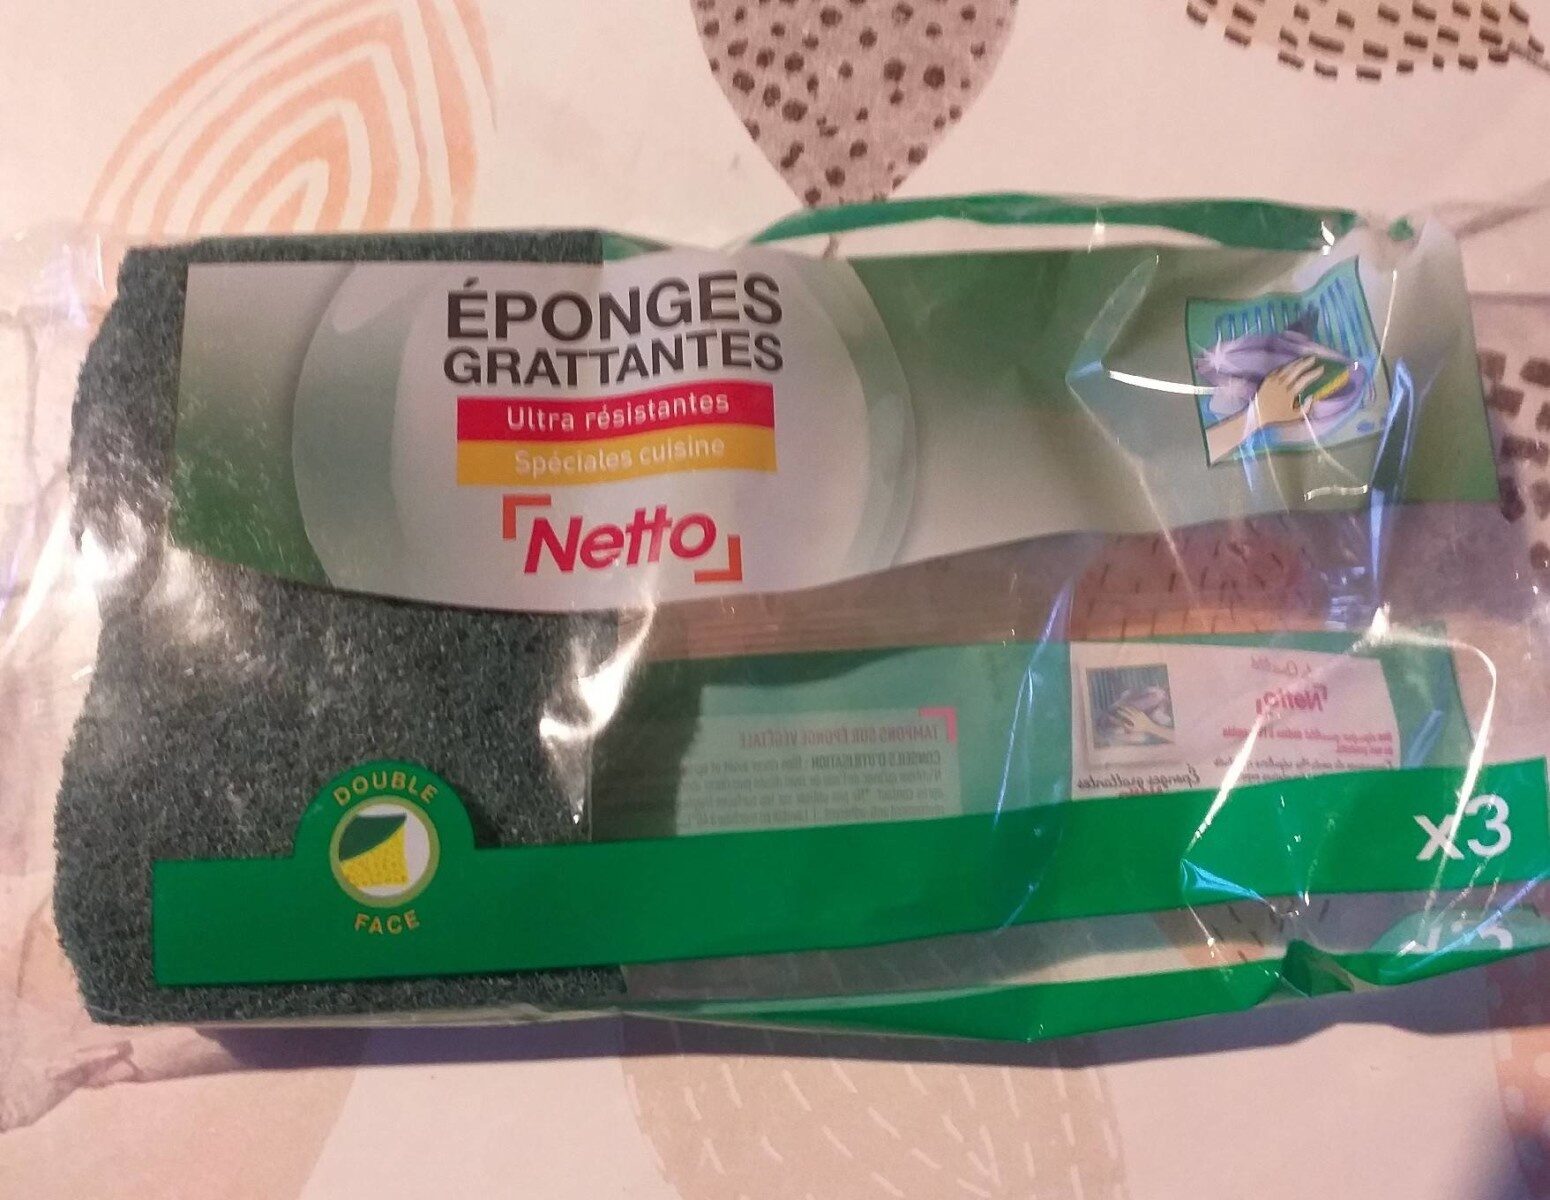 Éponges grattantes Netto - Produit - fr